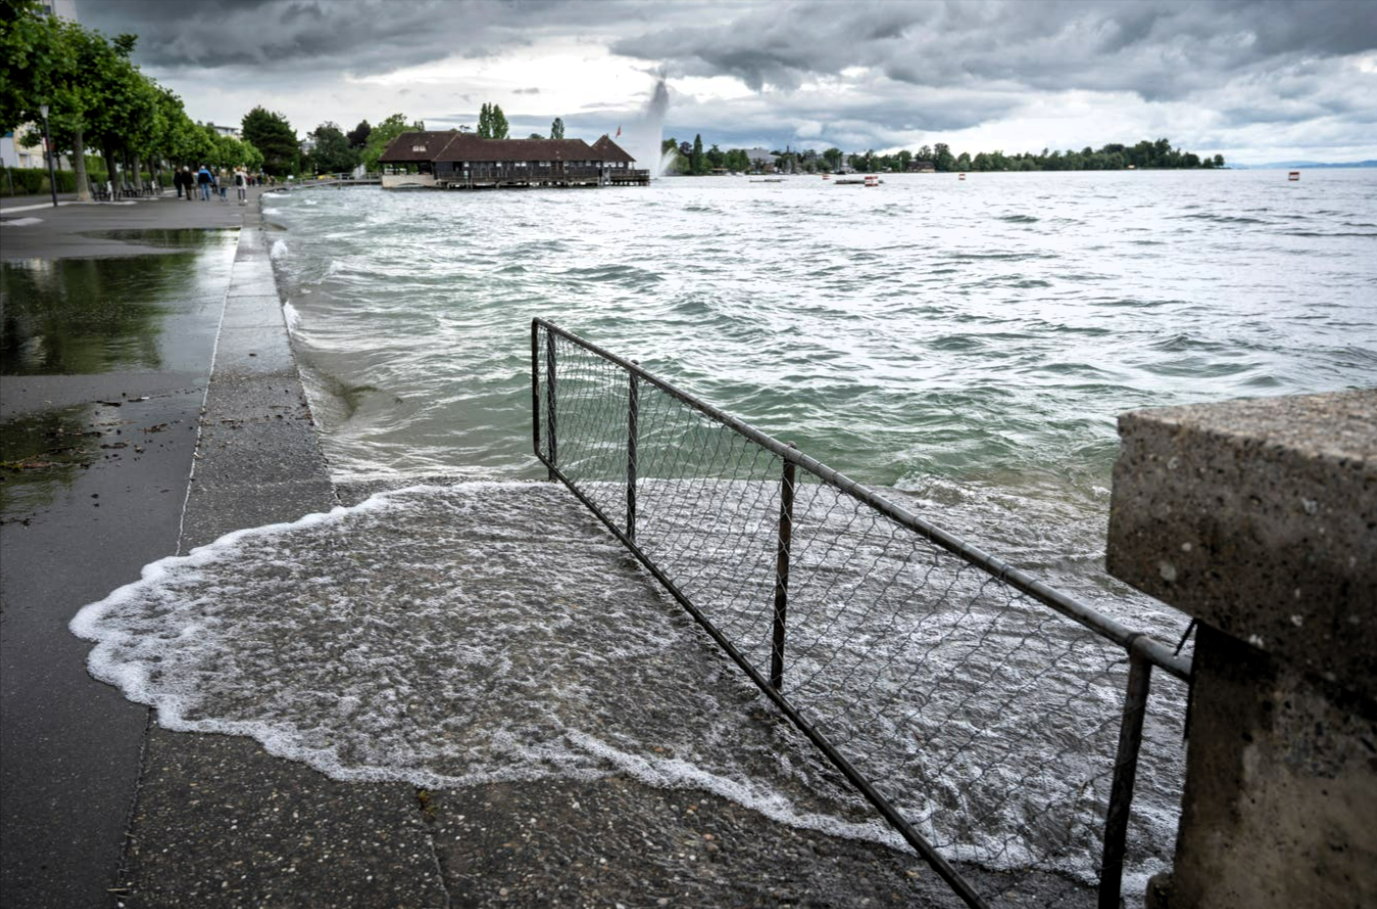 Katastrophenalarm in Deutschland! Bodensee droht überzulaufen - Regenmassen nicht mehr zu halten!